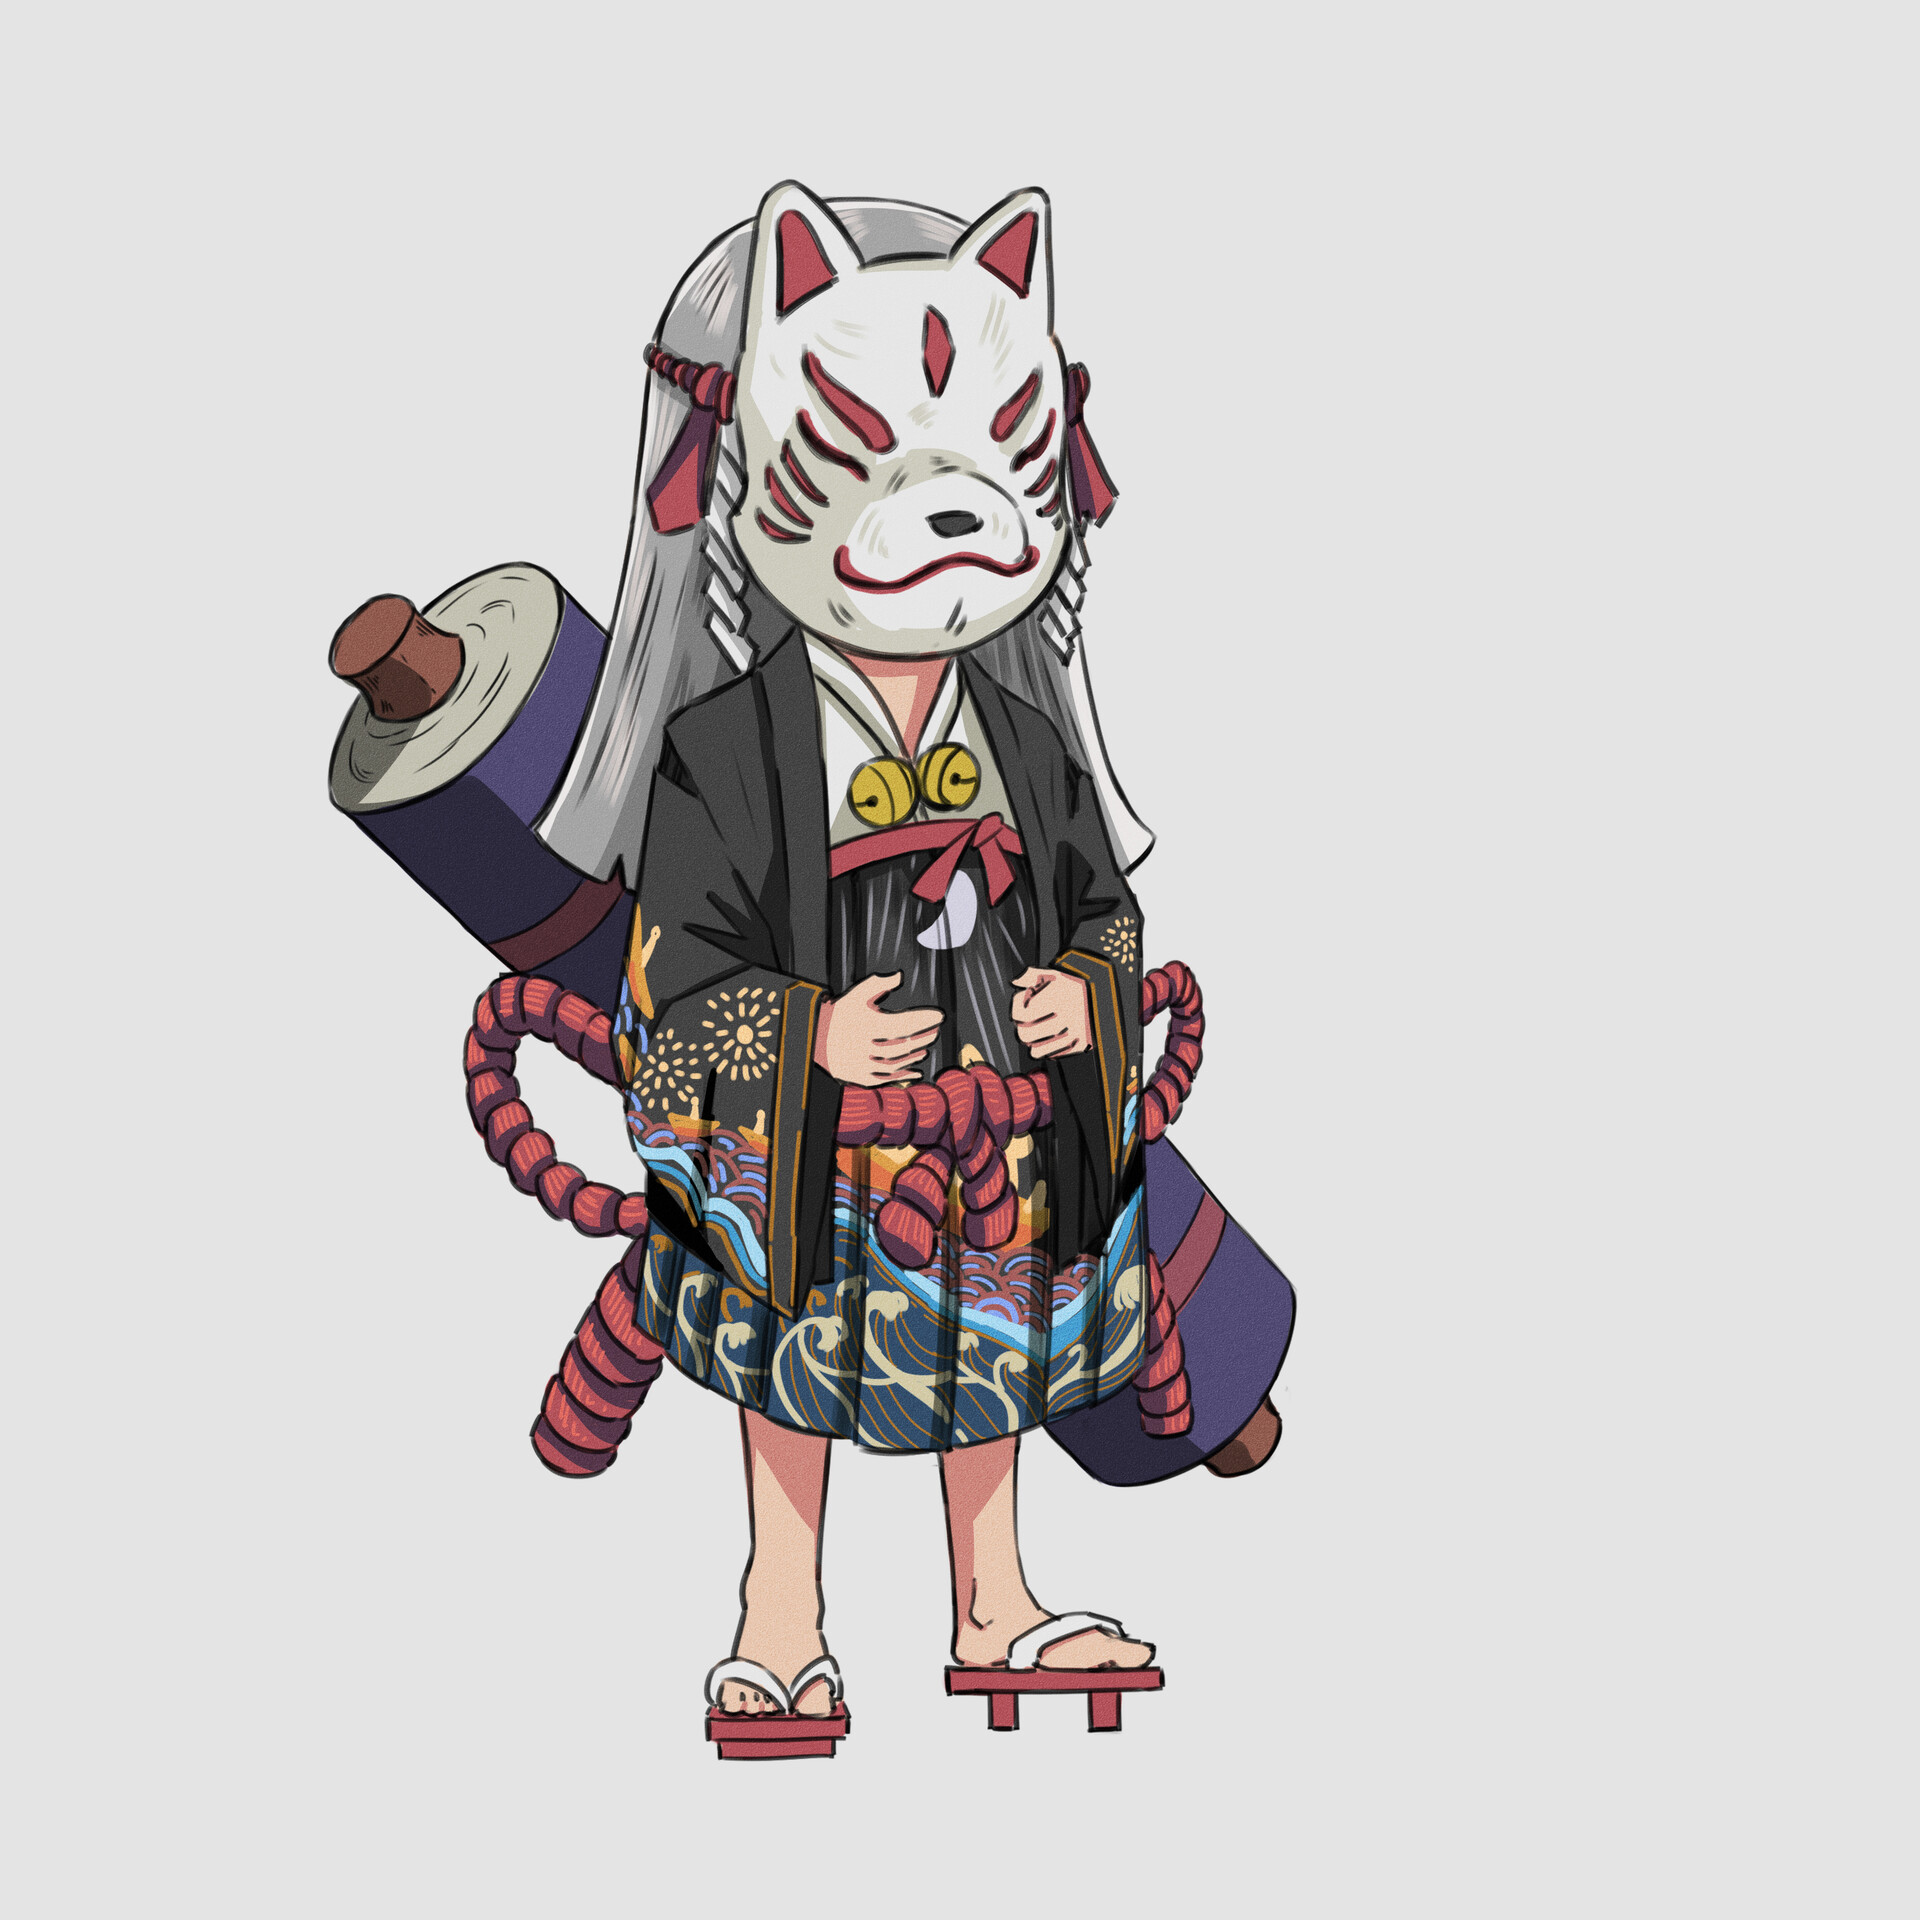 ArtStation - Japanese Themed Chibi Character Design